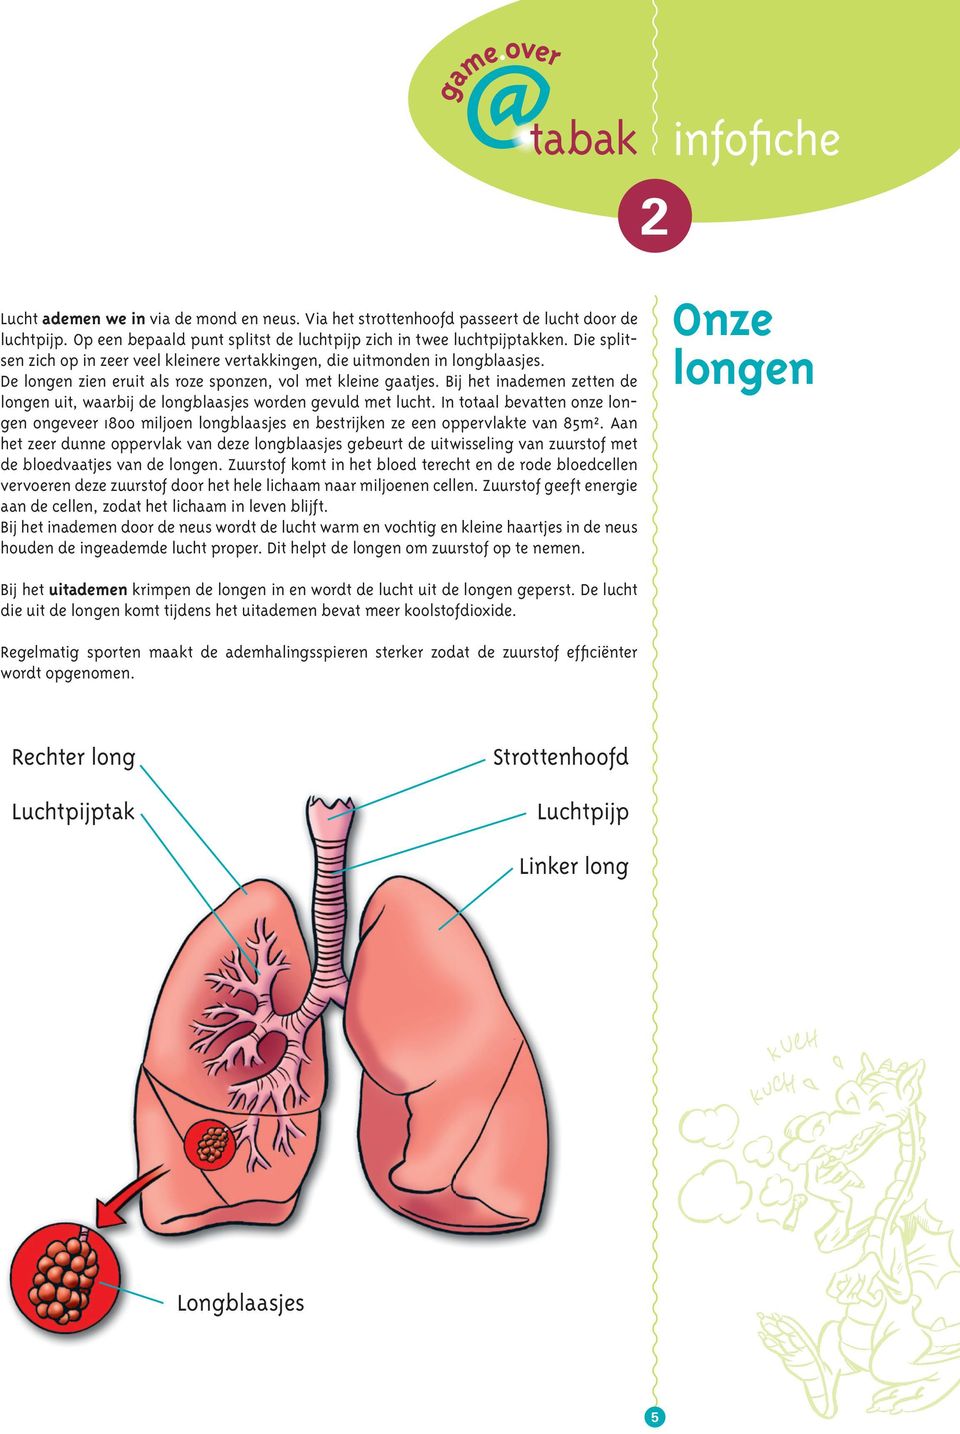 Bij het inademen zetten de longen uit, waarbij de longblaasjes worden gevuld met lucht. In totaal bevatten onze longen ongeveer 1800 miljoen longblaasjes en bestrijken ze een oppervlakte van 85m².